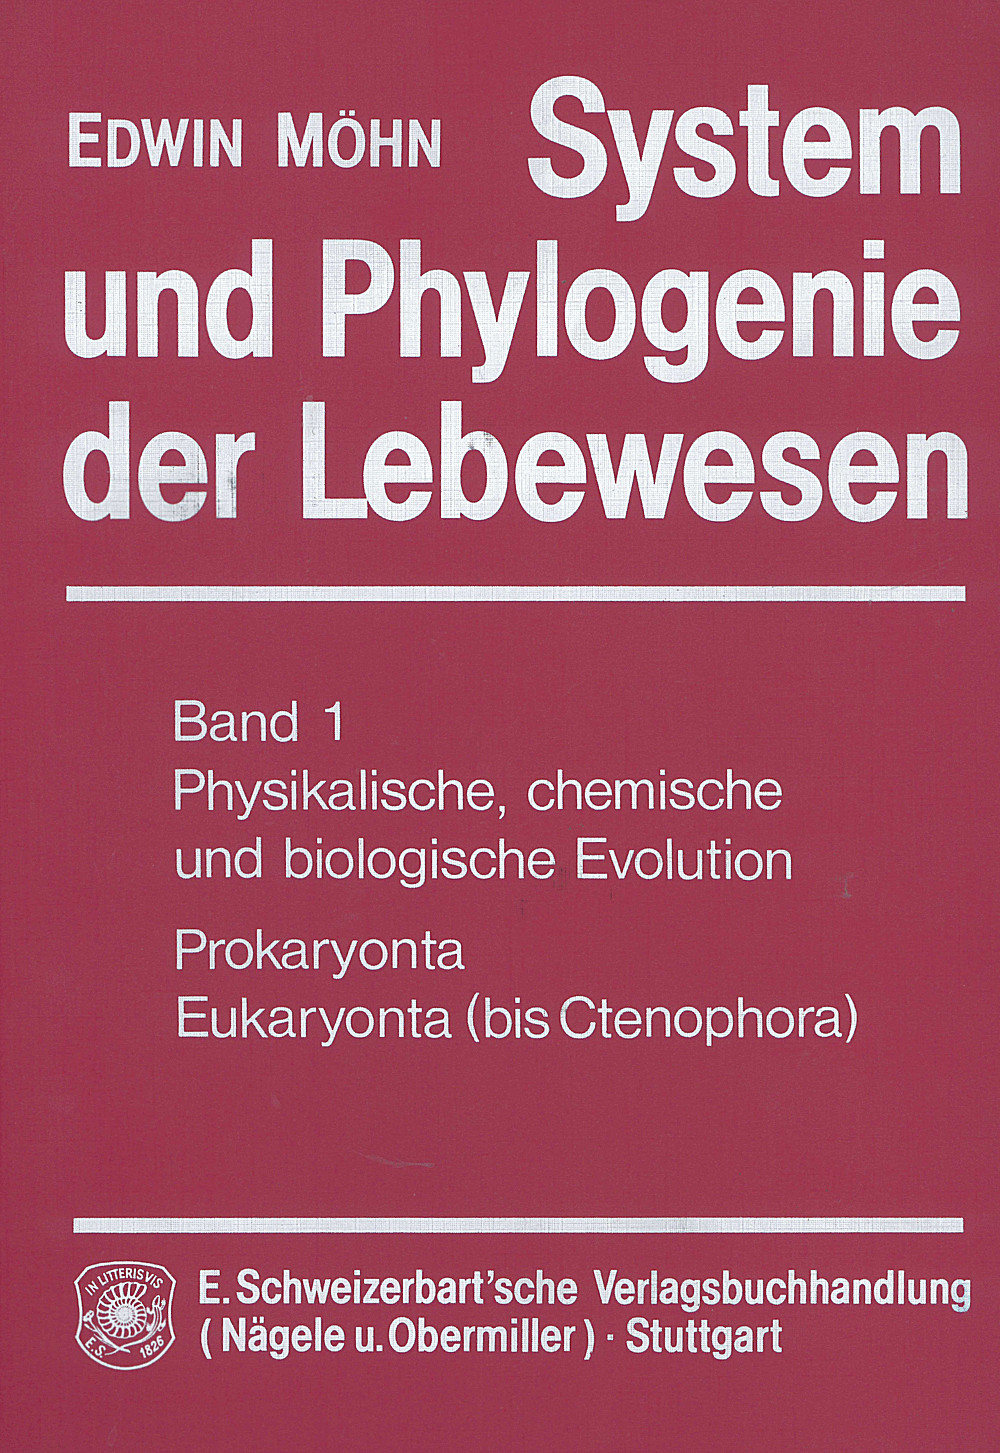 Edwin Möhn: System und Phylogenie der Lebewesen Band 1: Physikalische, chemische und biologische Evolution. 
Prokaryonta, Eukaryonta (bis Ctenophora)